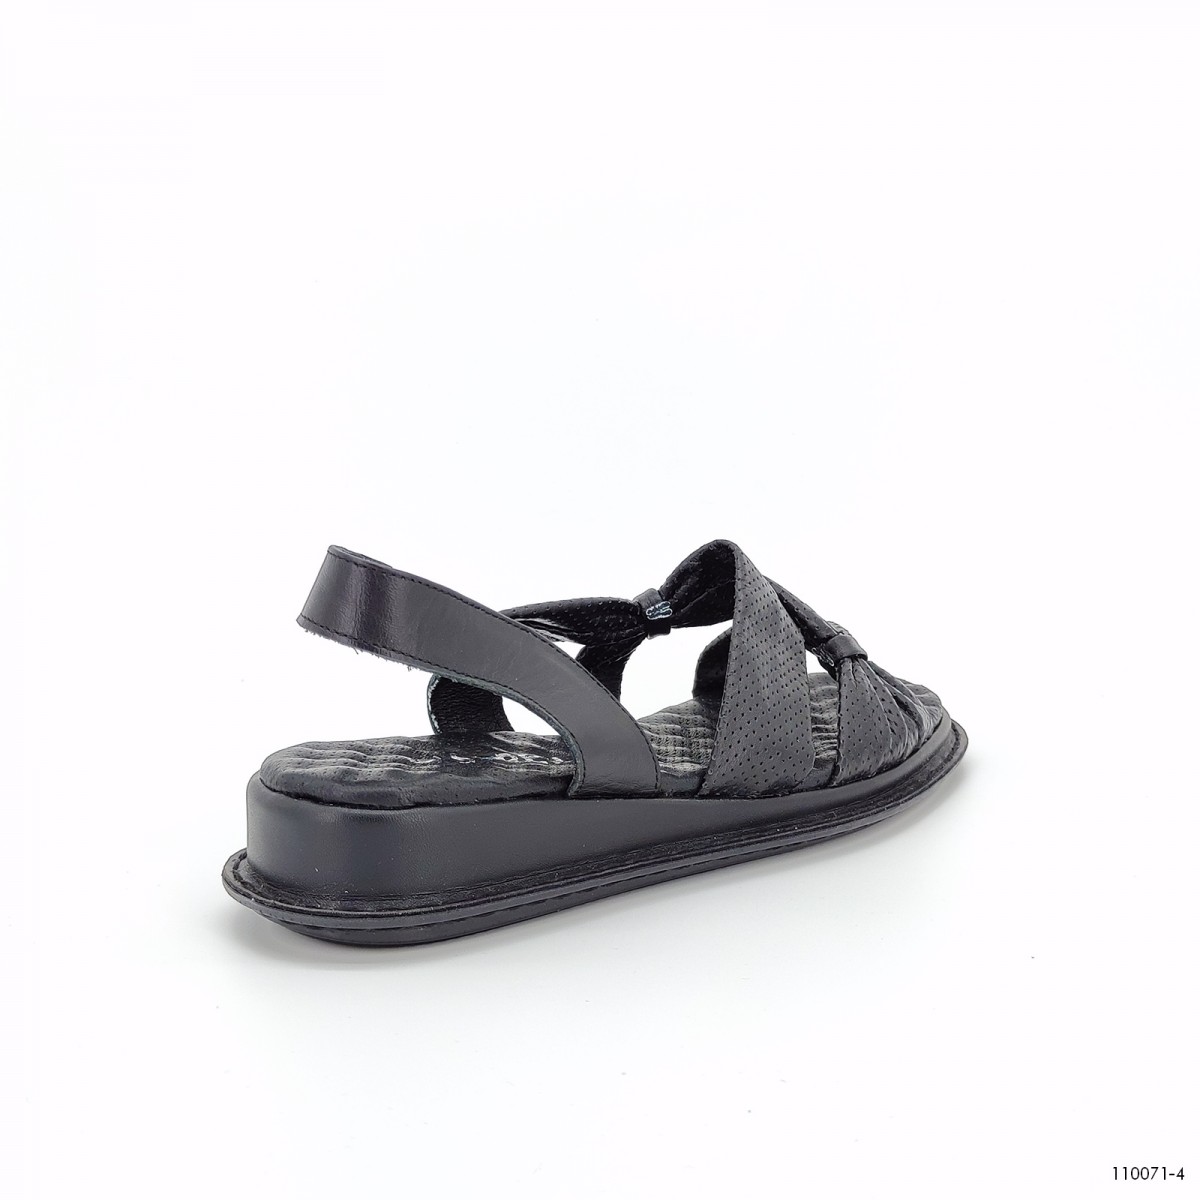 110071, сандали Casoreti, женские летние, черный